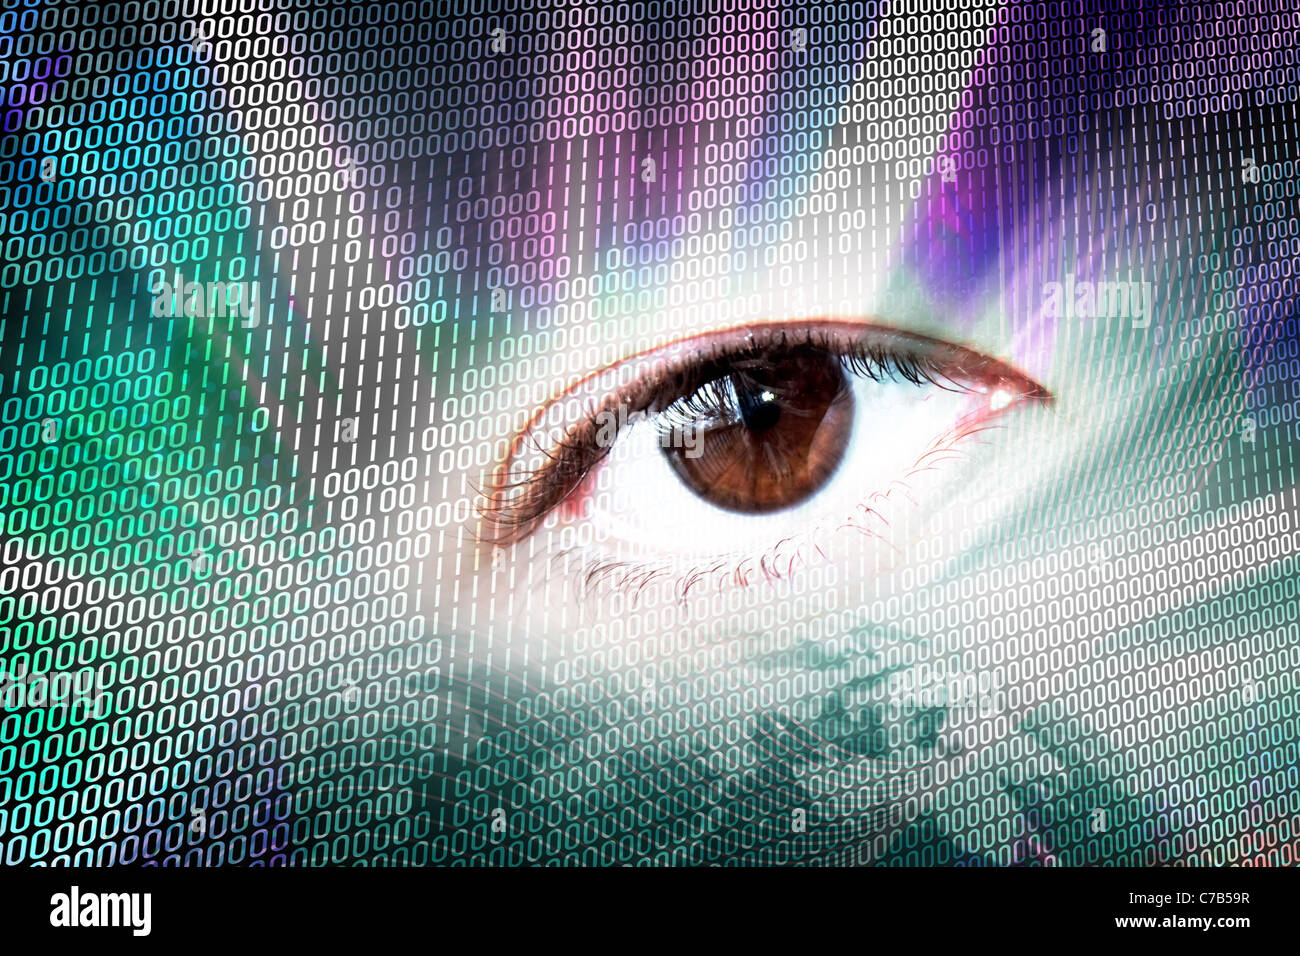 Abstrakte digitale Montage eines Auges und binäre Codes. Stockfoto